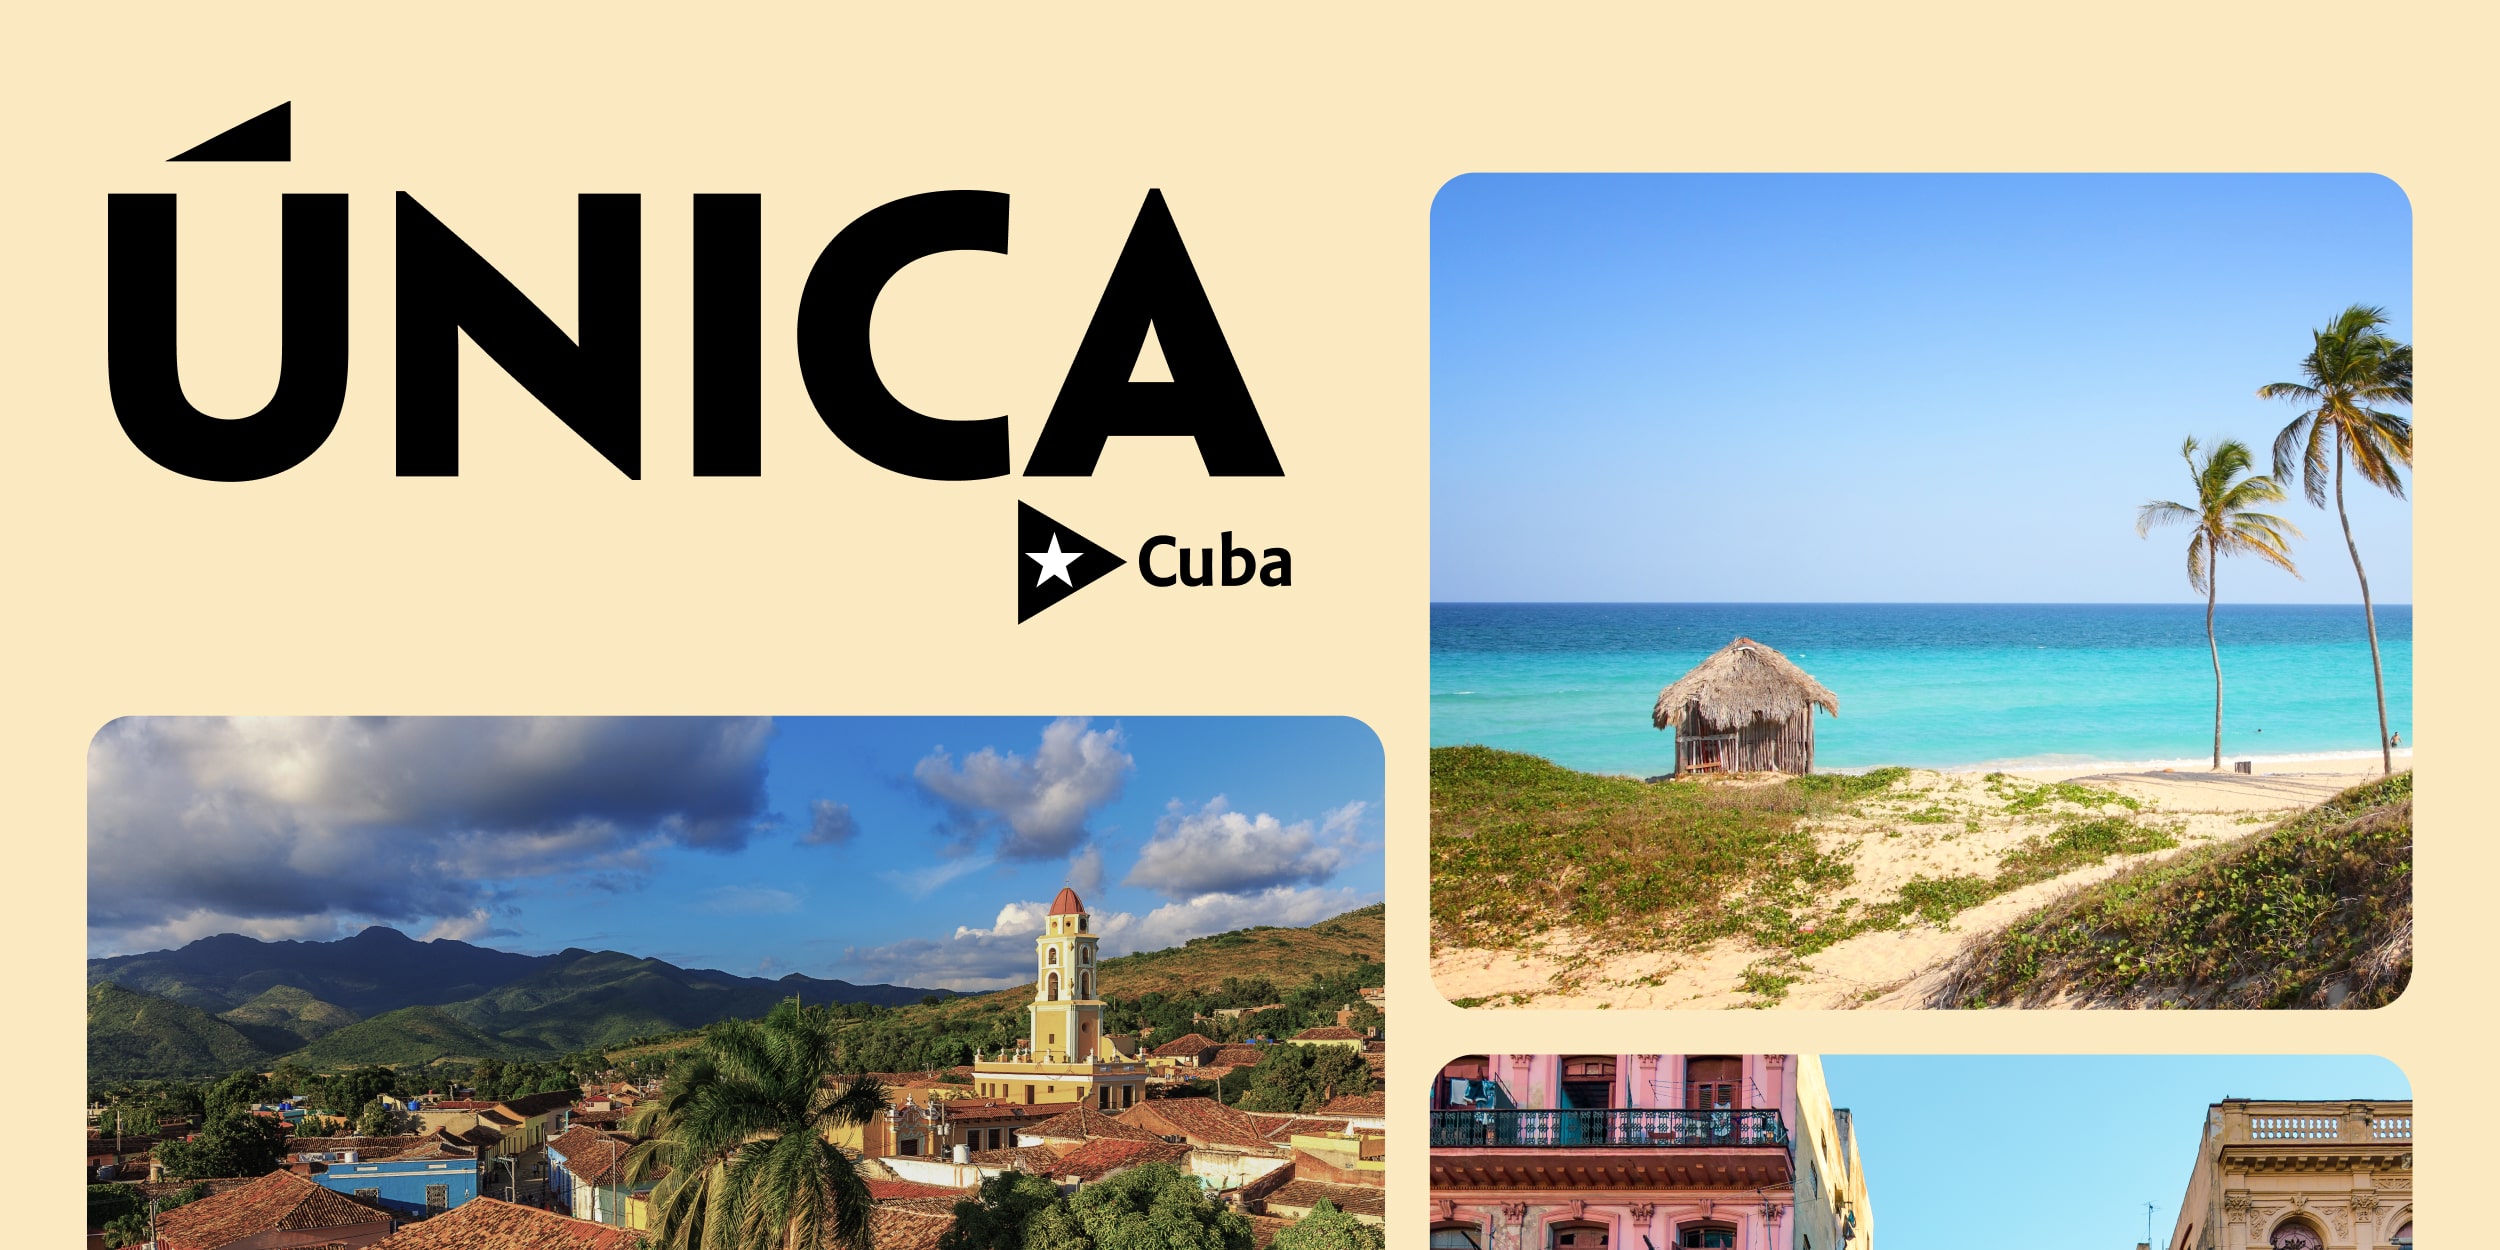 Cuba Unica. Почему стоит съездить на Кубу хотя бы раз в жизни